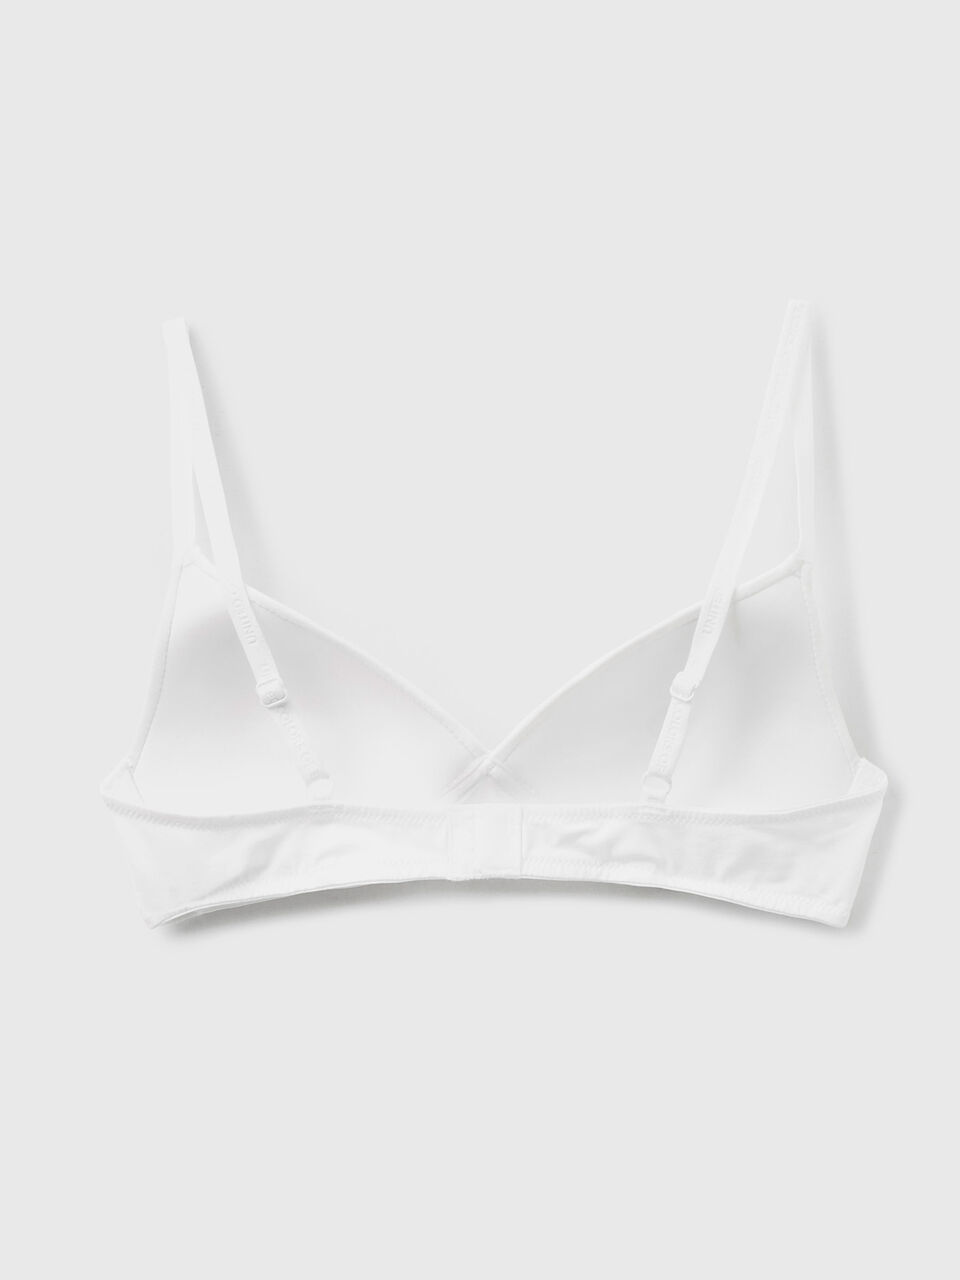 Buy online White Cotton Regular Bra from lingerie for Women by